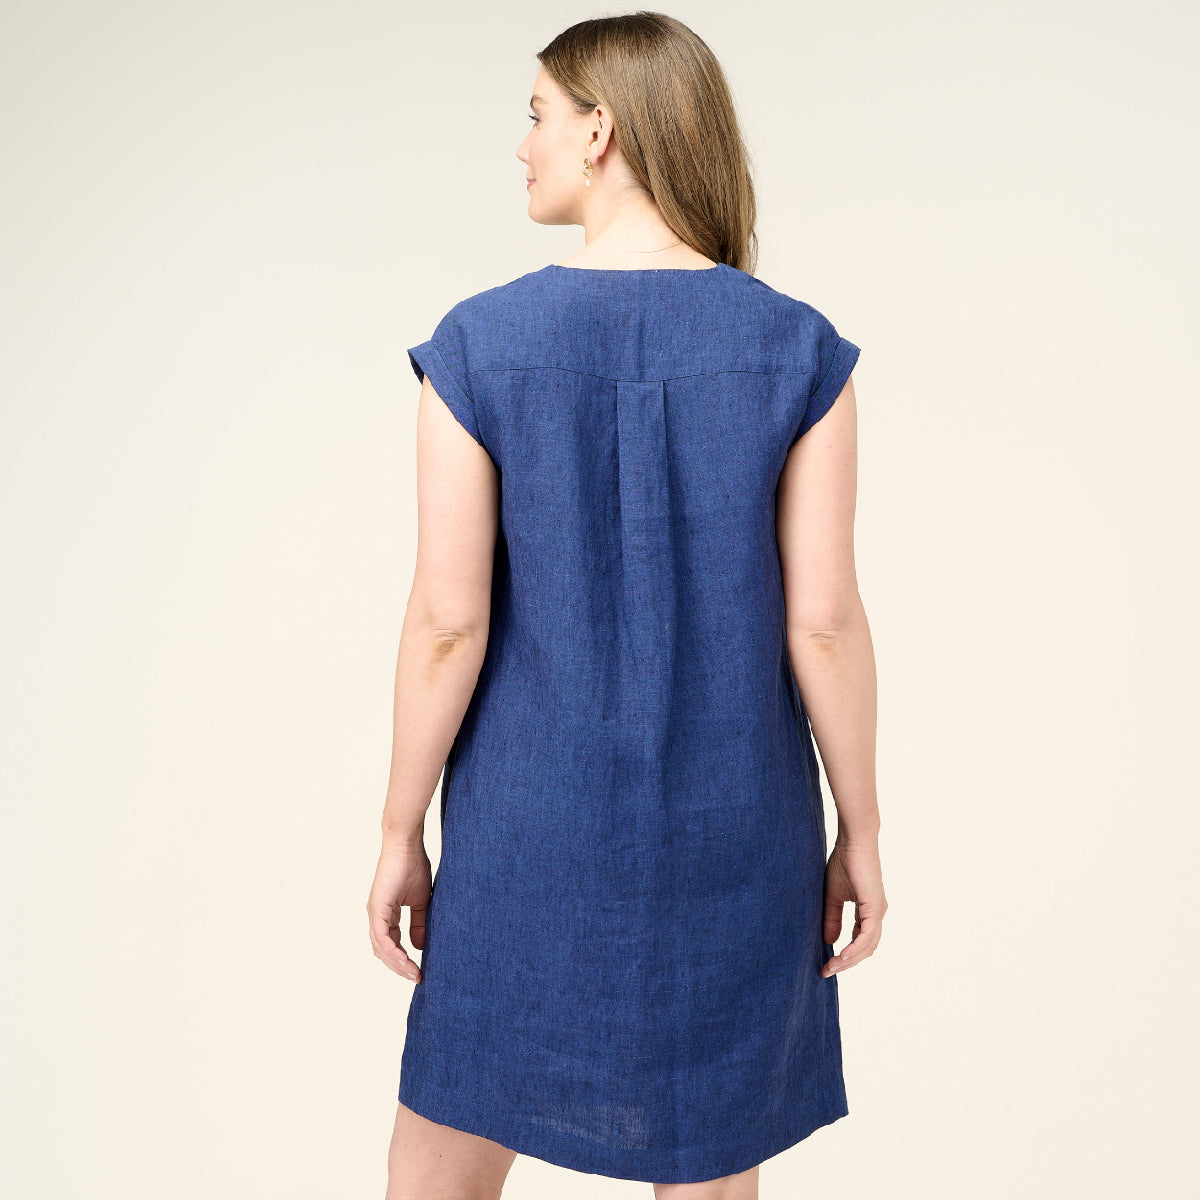 Linen Vee Neck Extended Sleeveless Dress